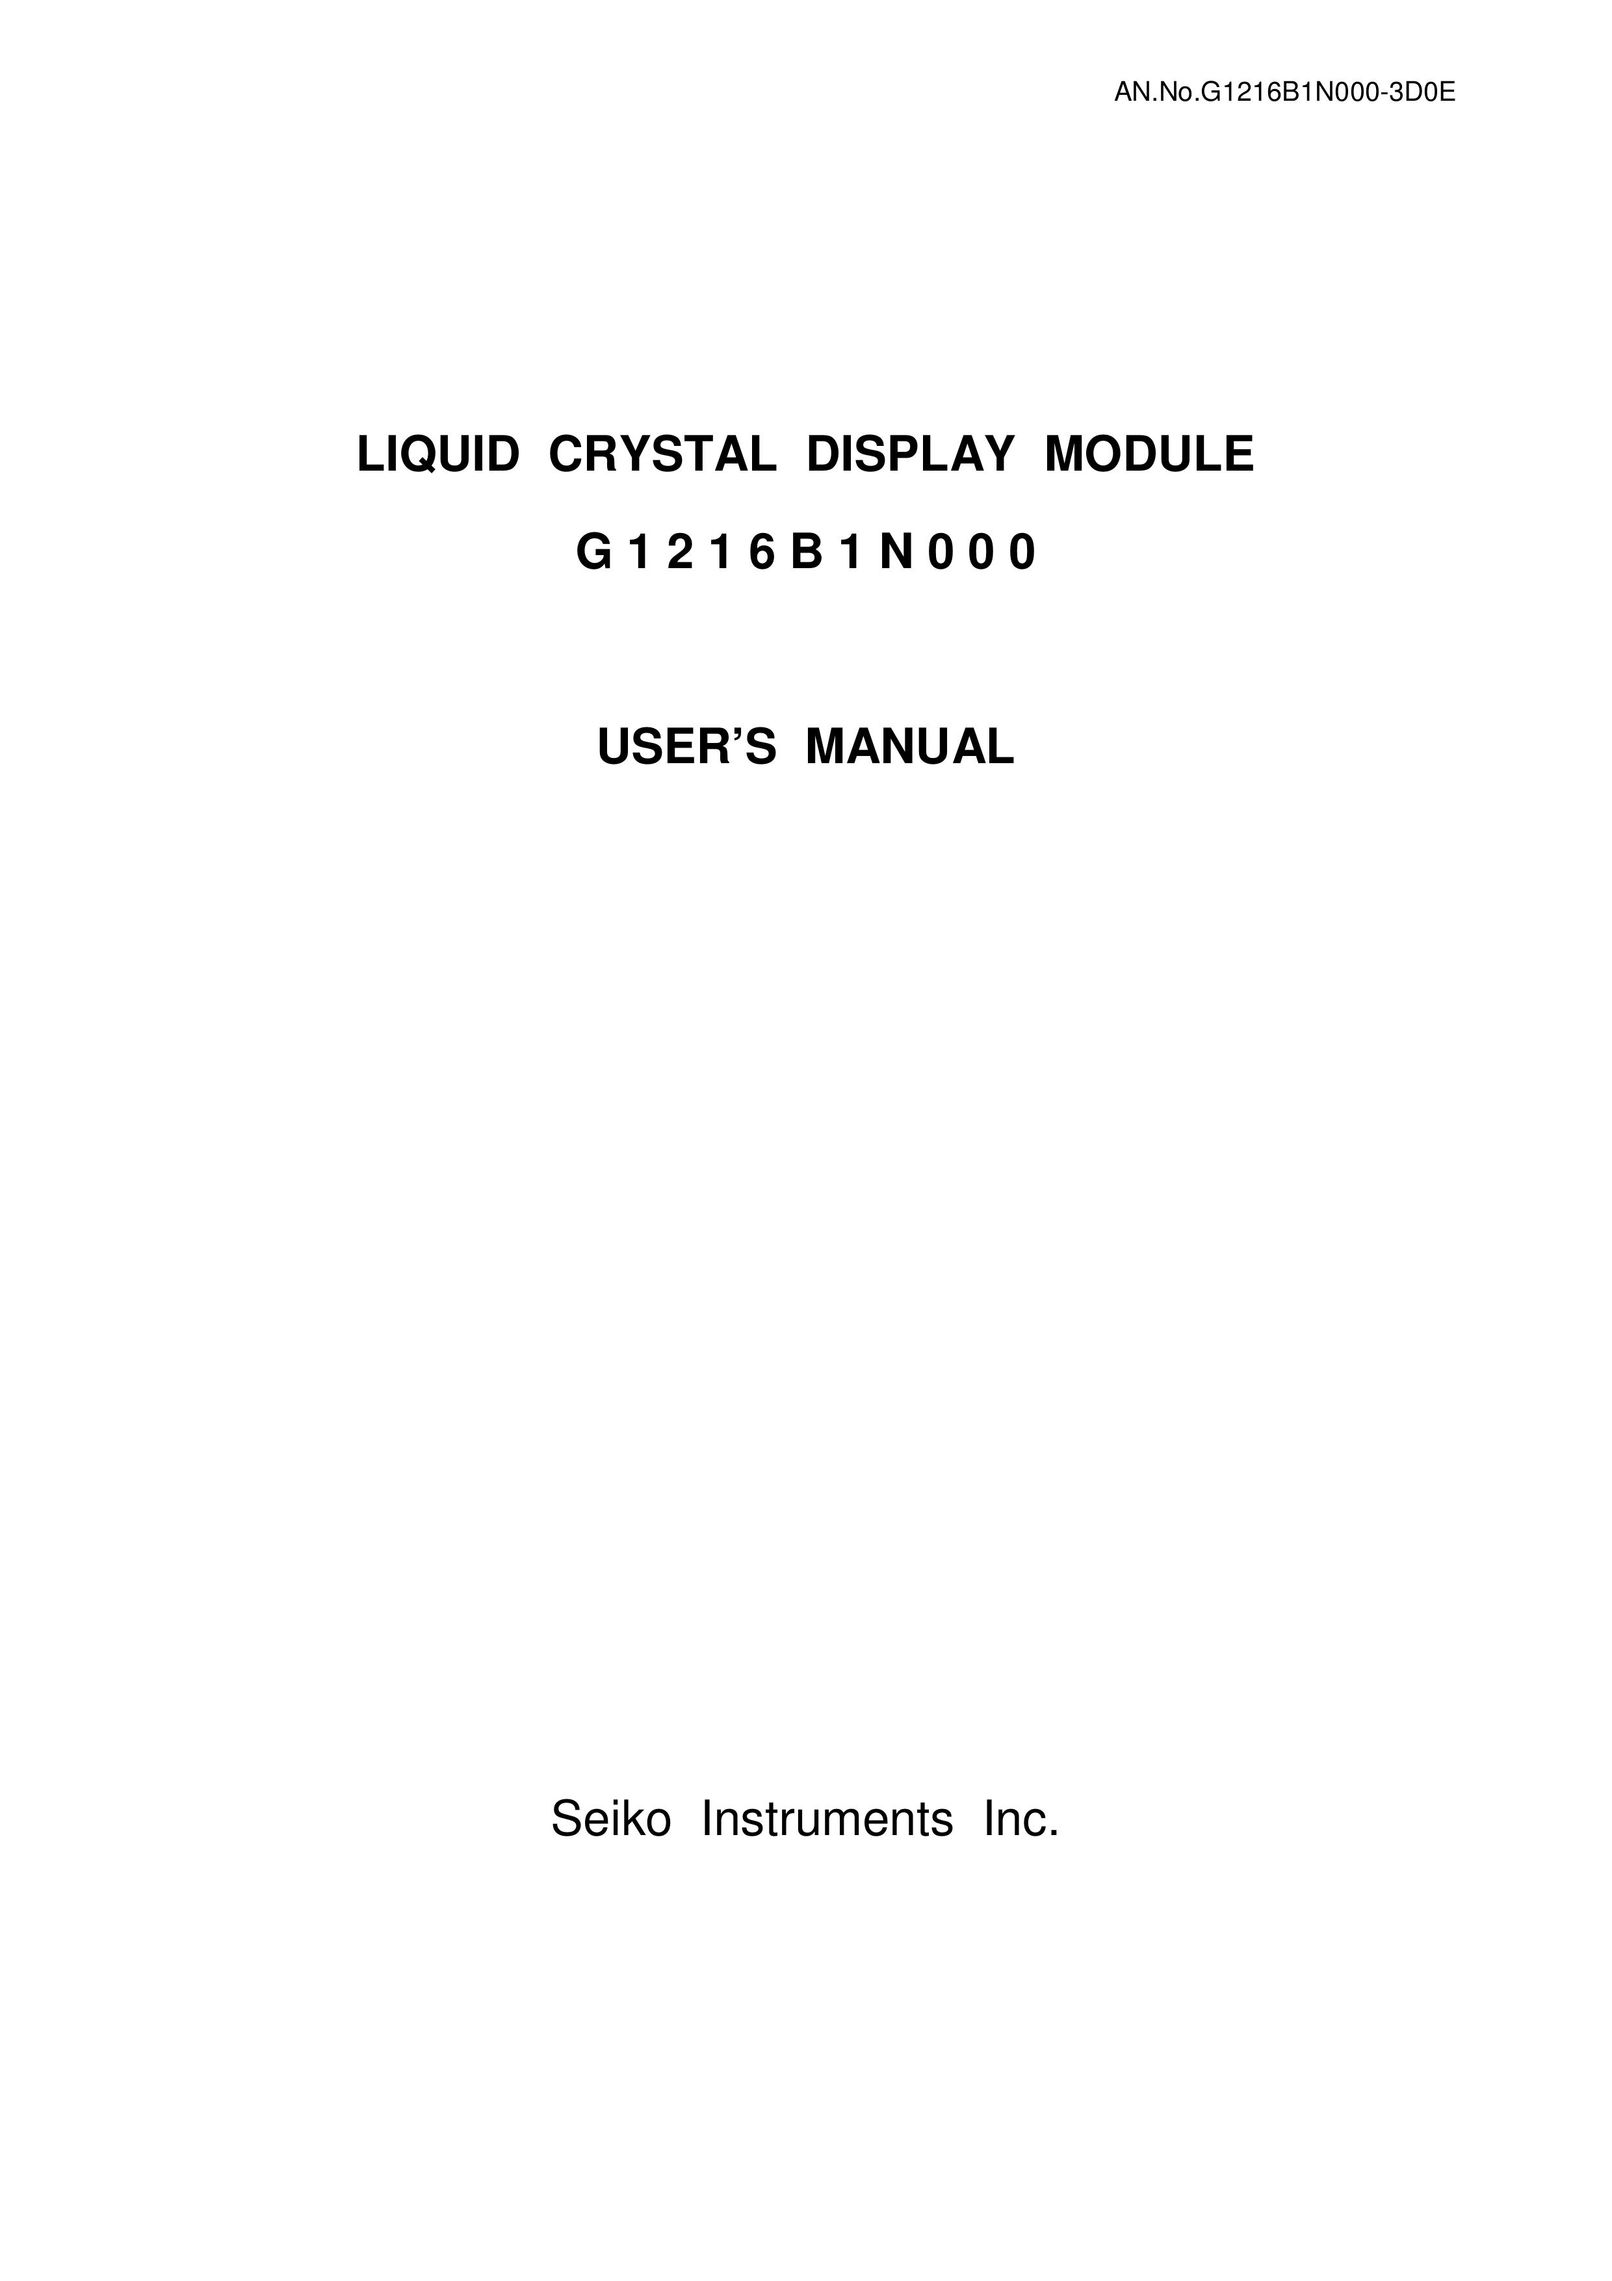 Seiko Instruments G1216B1N000 Computer Monitor User Manual